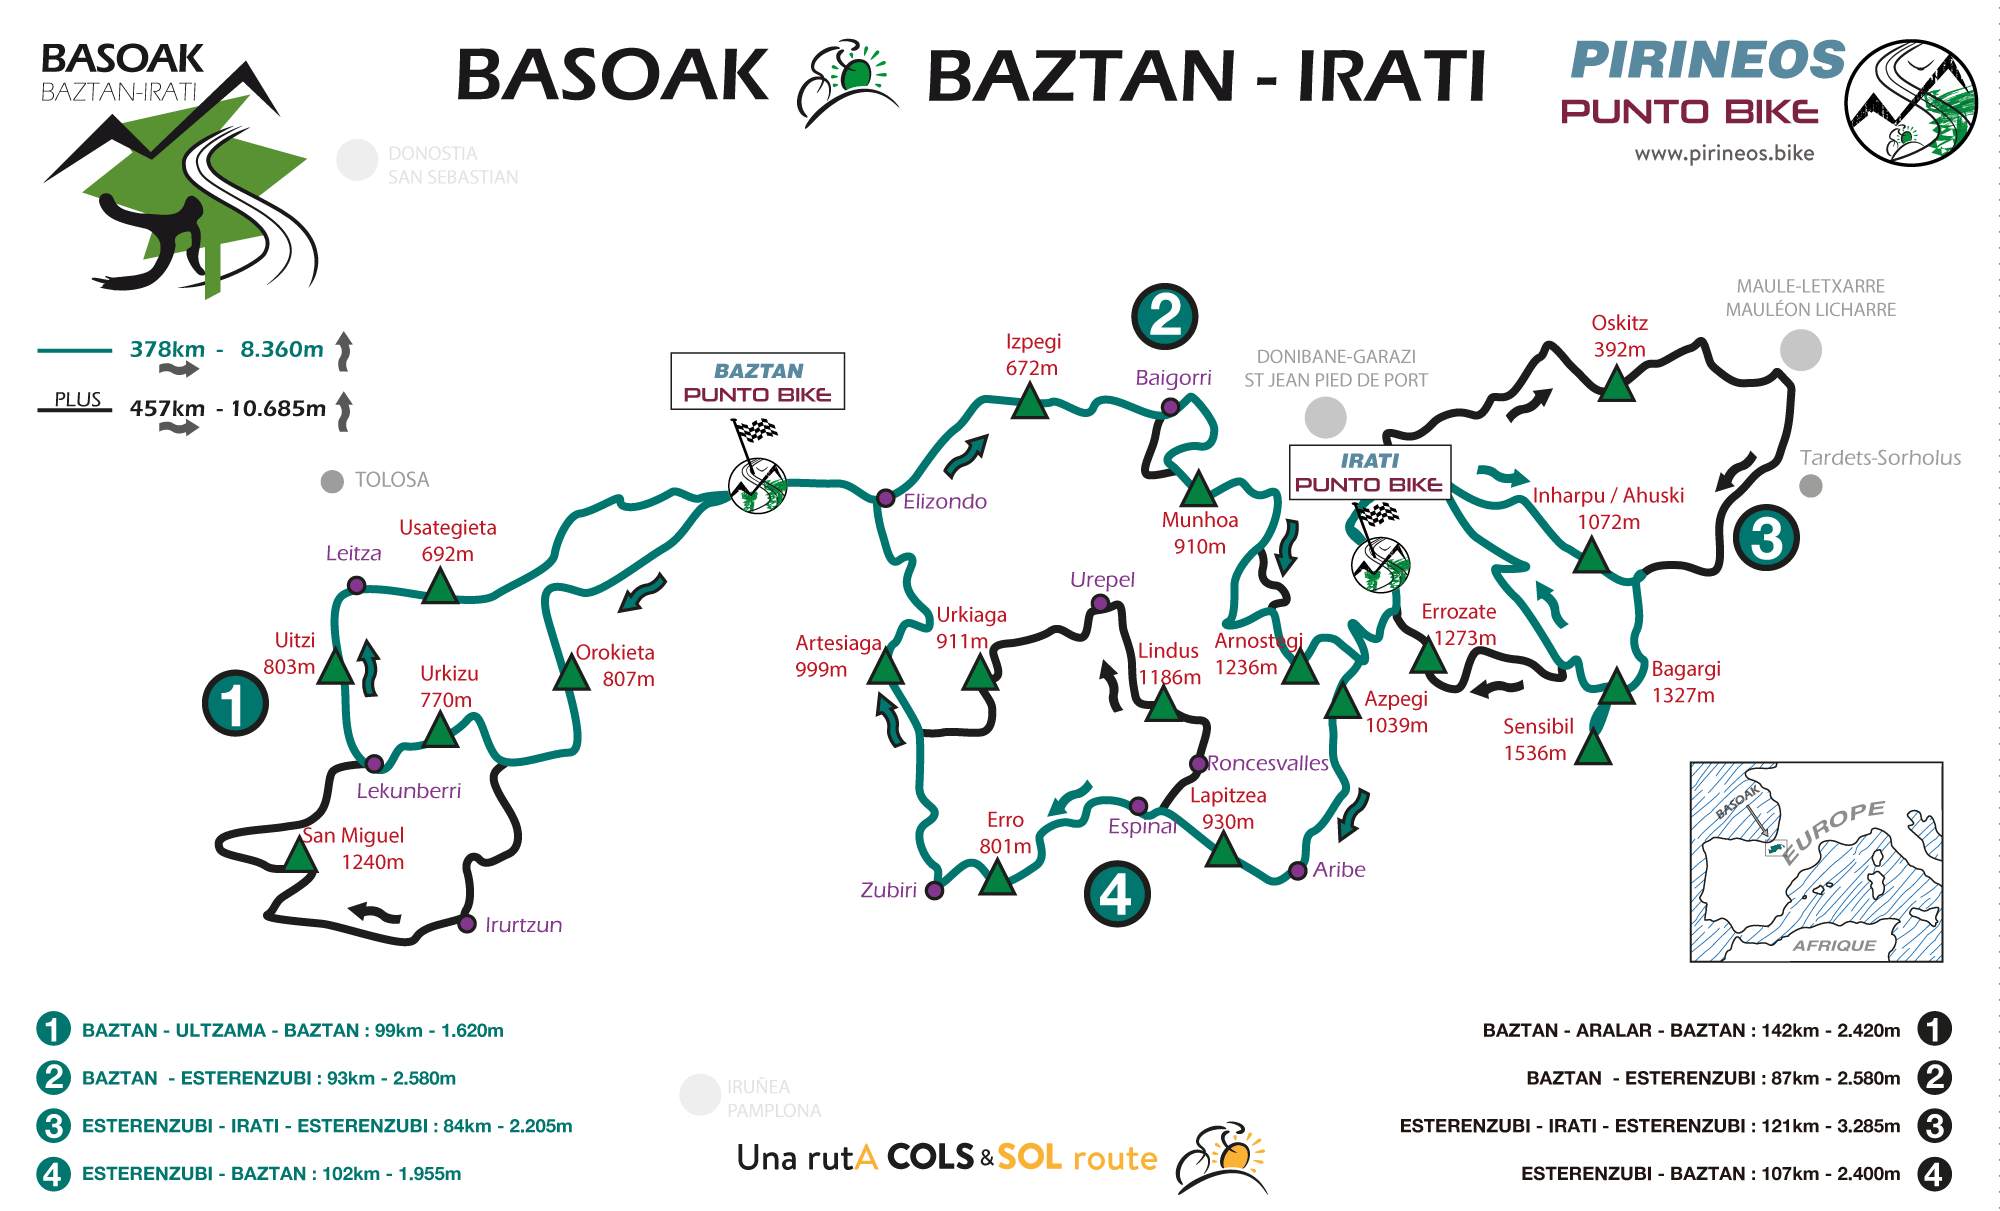 Map Basoak Baztan Irati